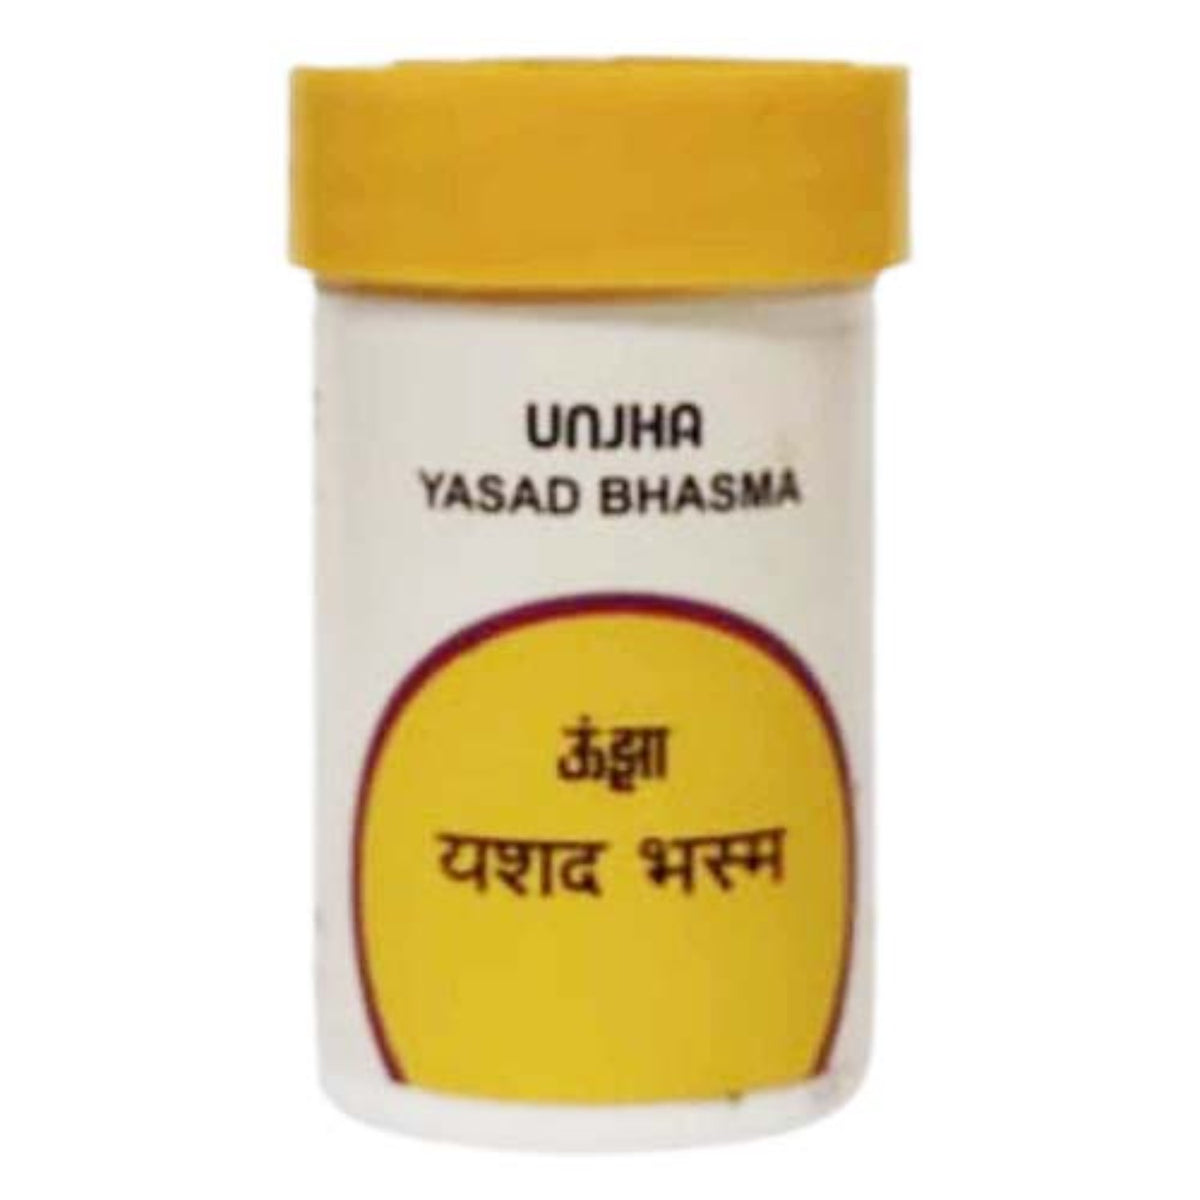 Unjha Ayurvedic Yasad Bhasma Powder